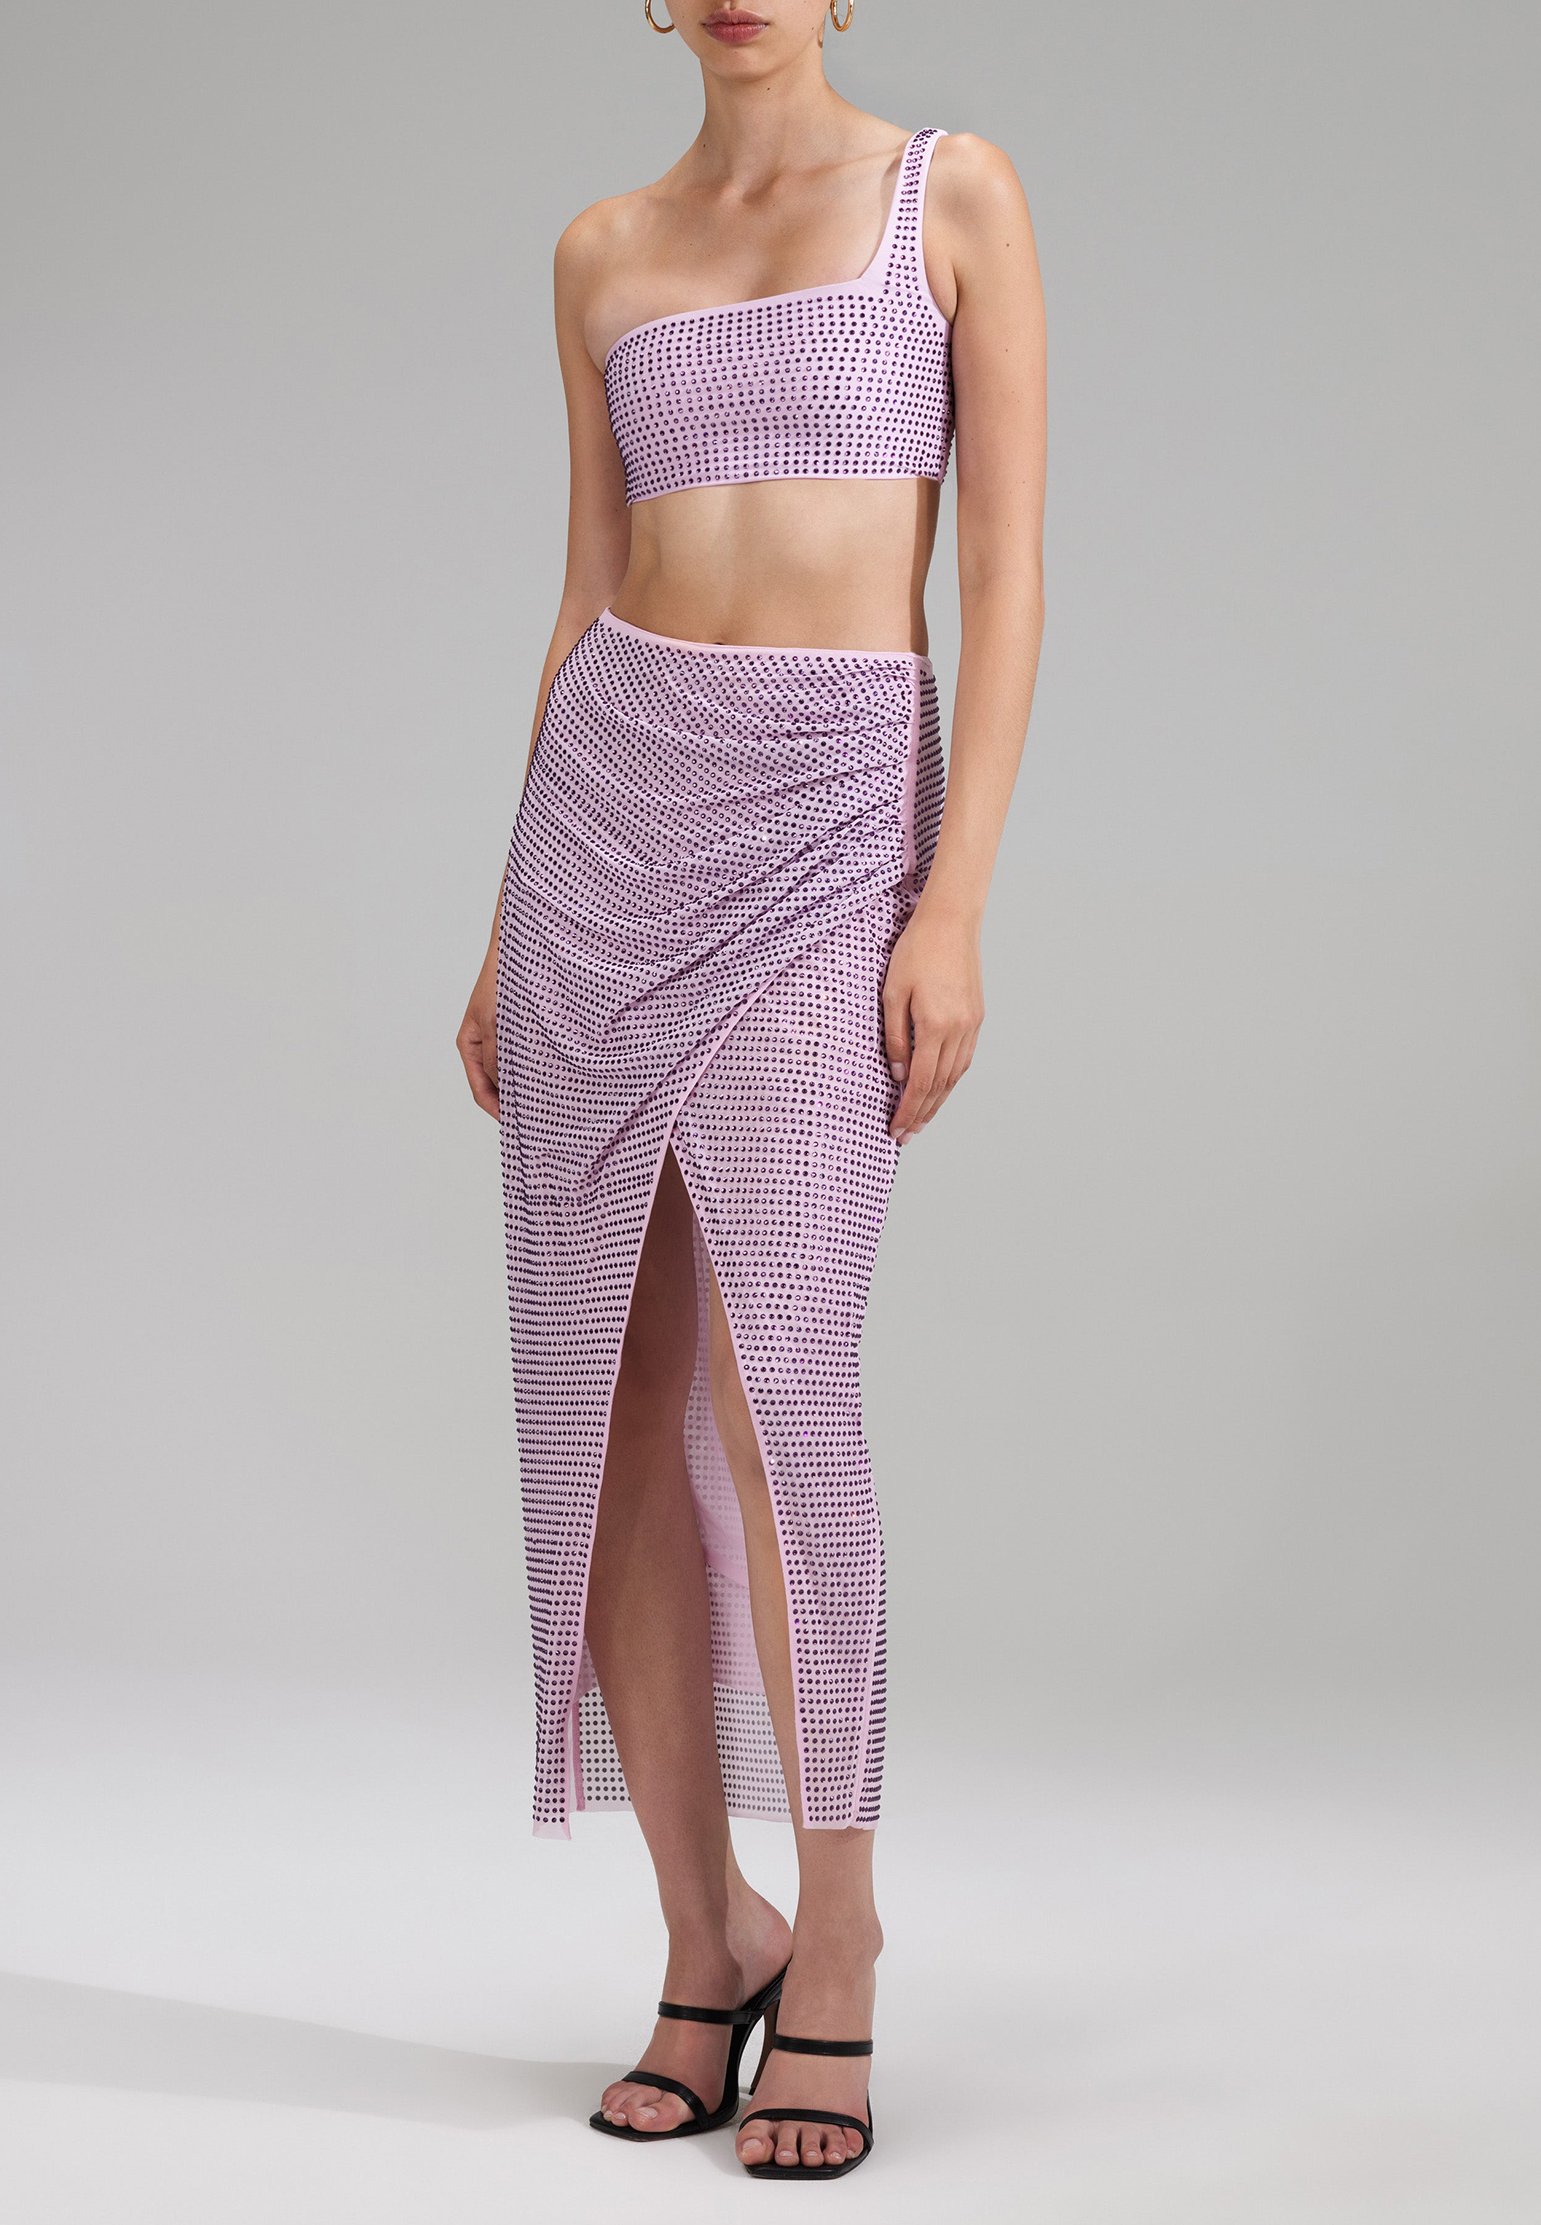 Bikini top SELF-PORTRAIT Color: lilac (Code: 2241) in online store Allure